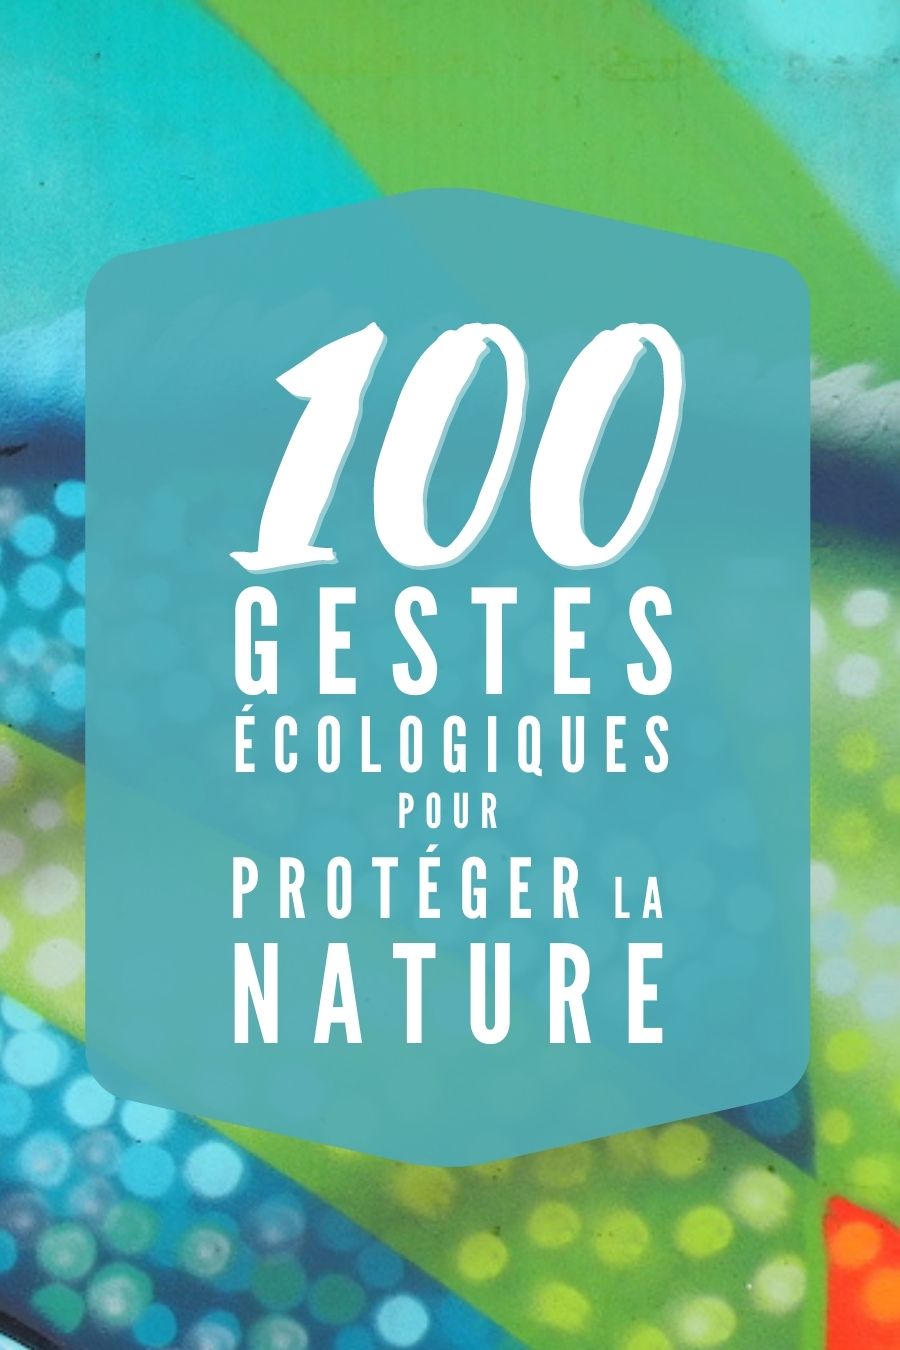 100 idées de gestes écologiques simples à pratiquer pour protéger la planète à votre échelle. Chaque geste compte.